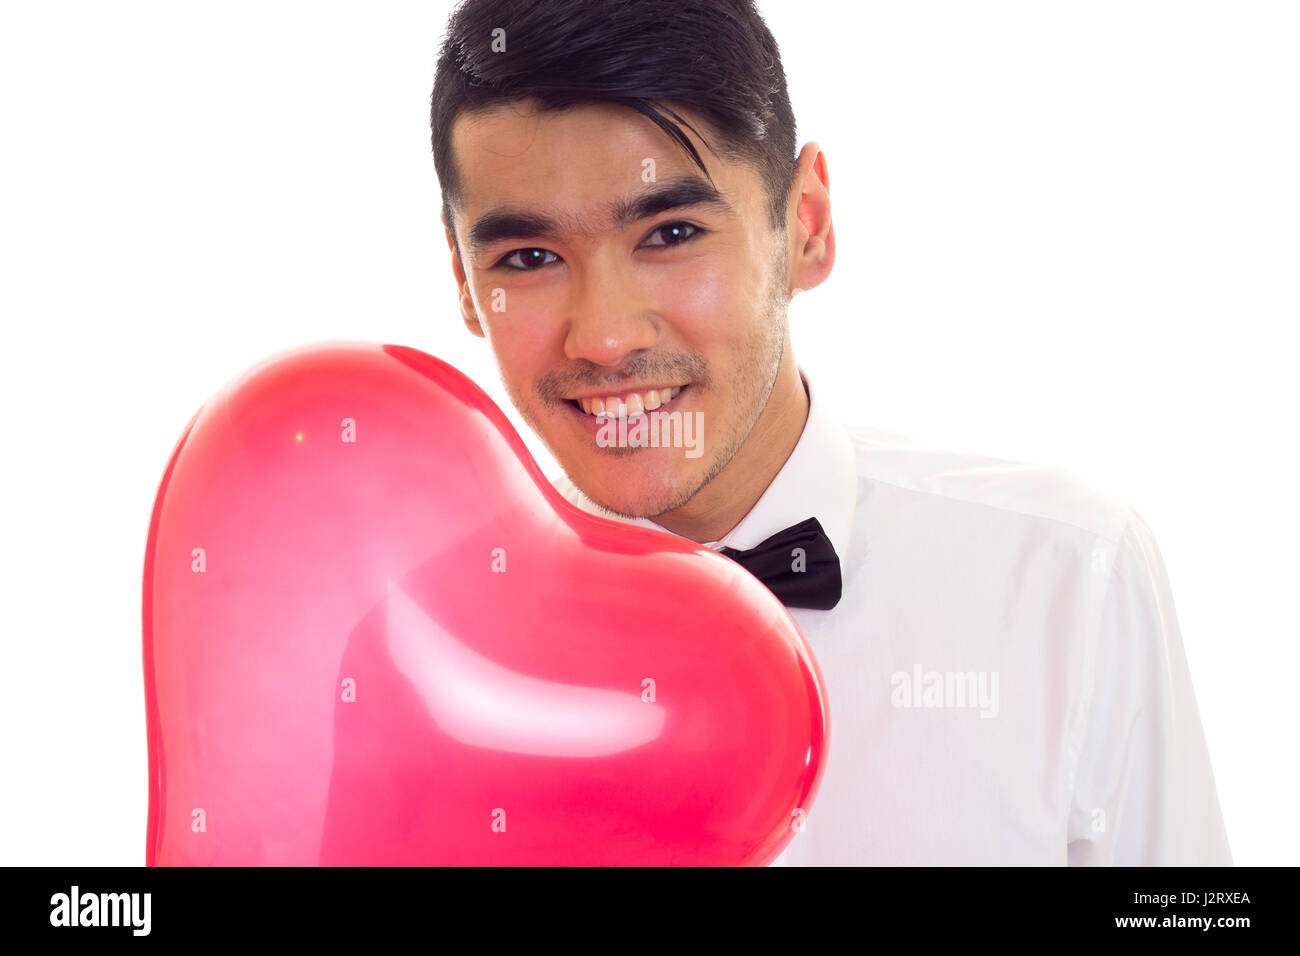 Jeune homme avec Bow-tie holding balloon Banque D'Images